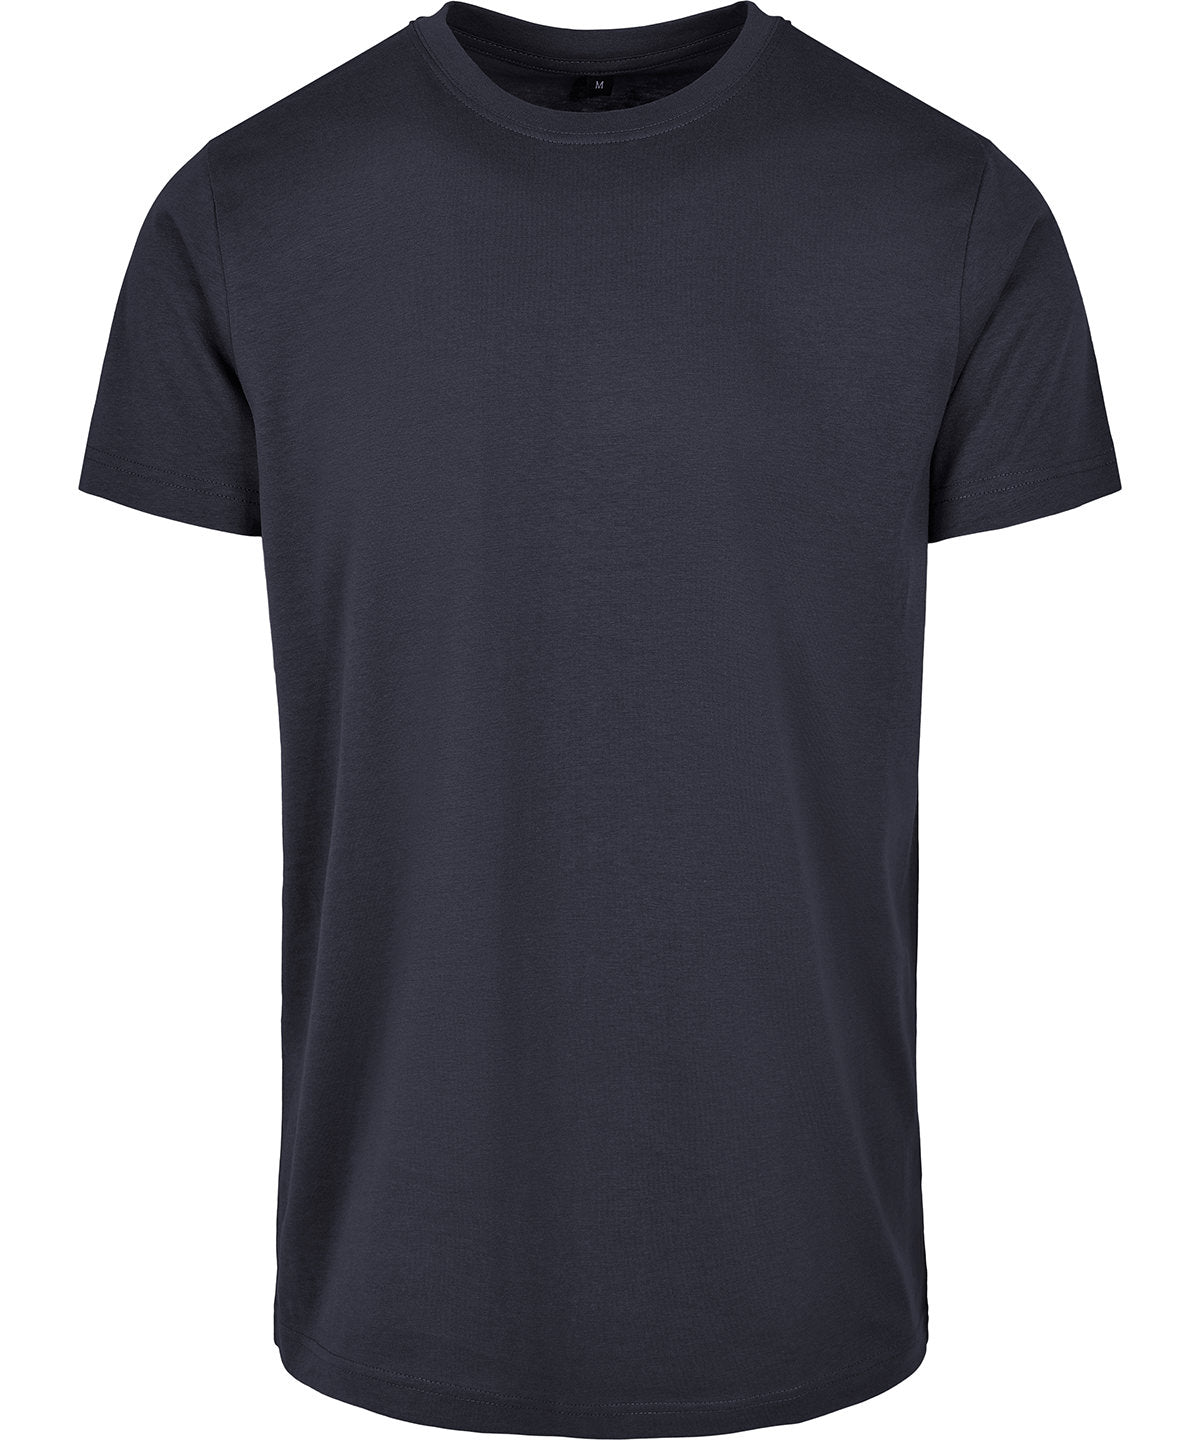 Personalised T-Shirts - Bottle Build Your Brand Basic Basic round neck tee